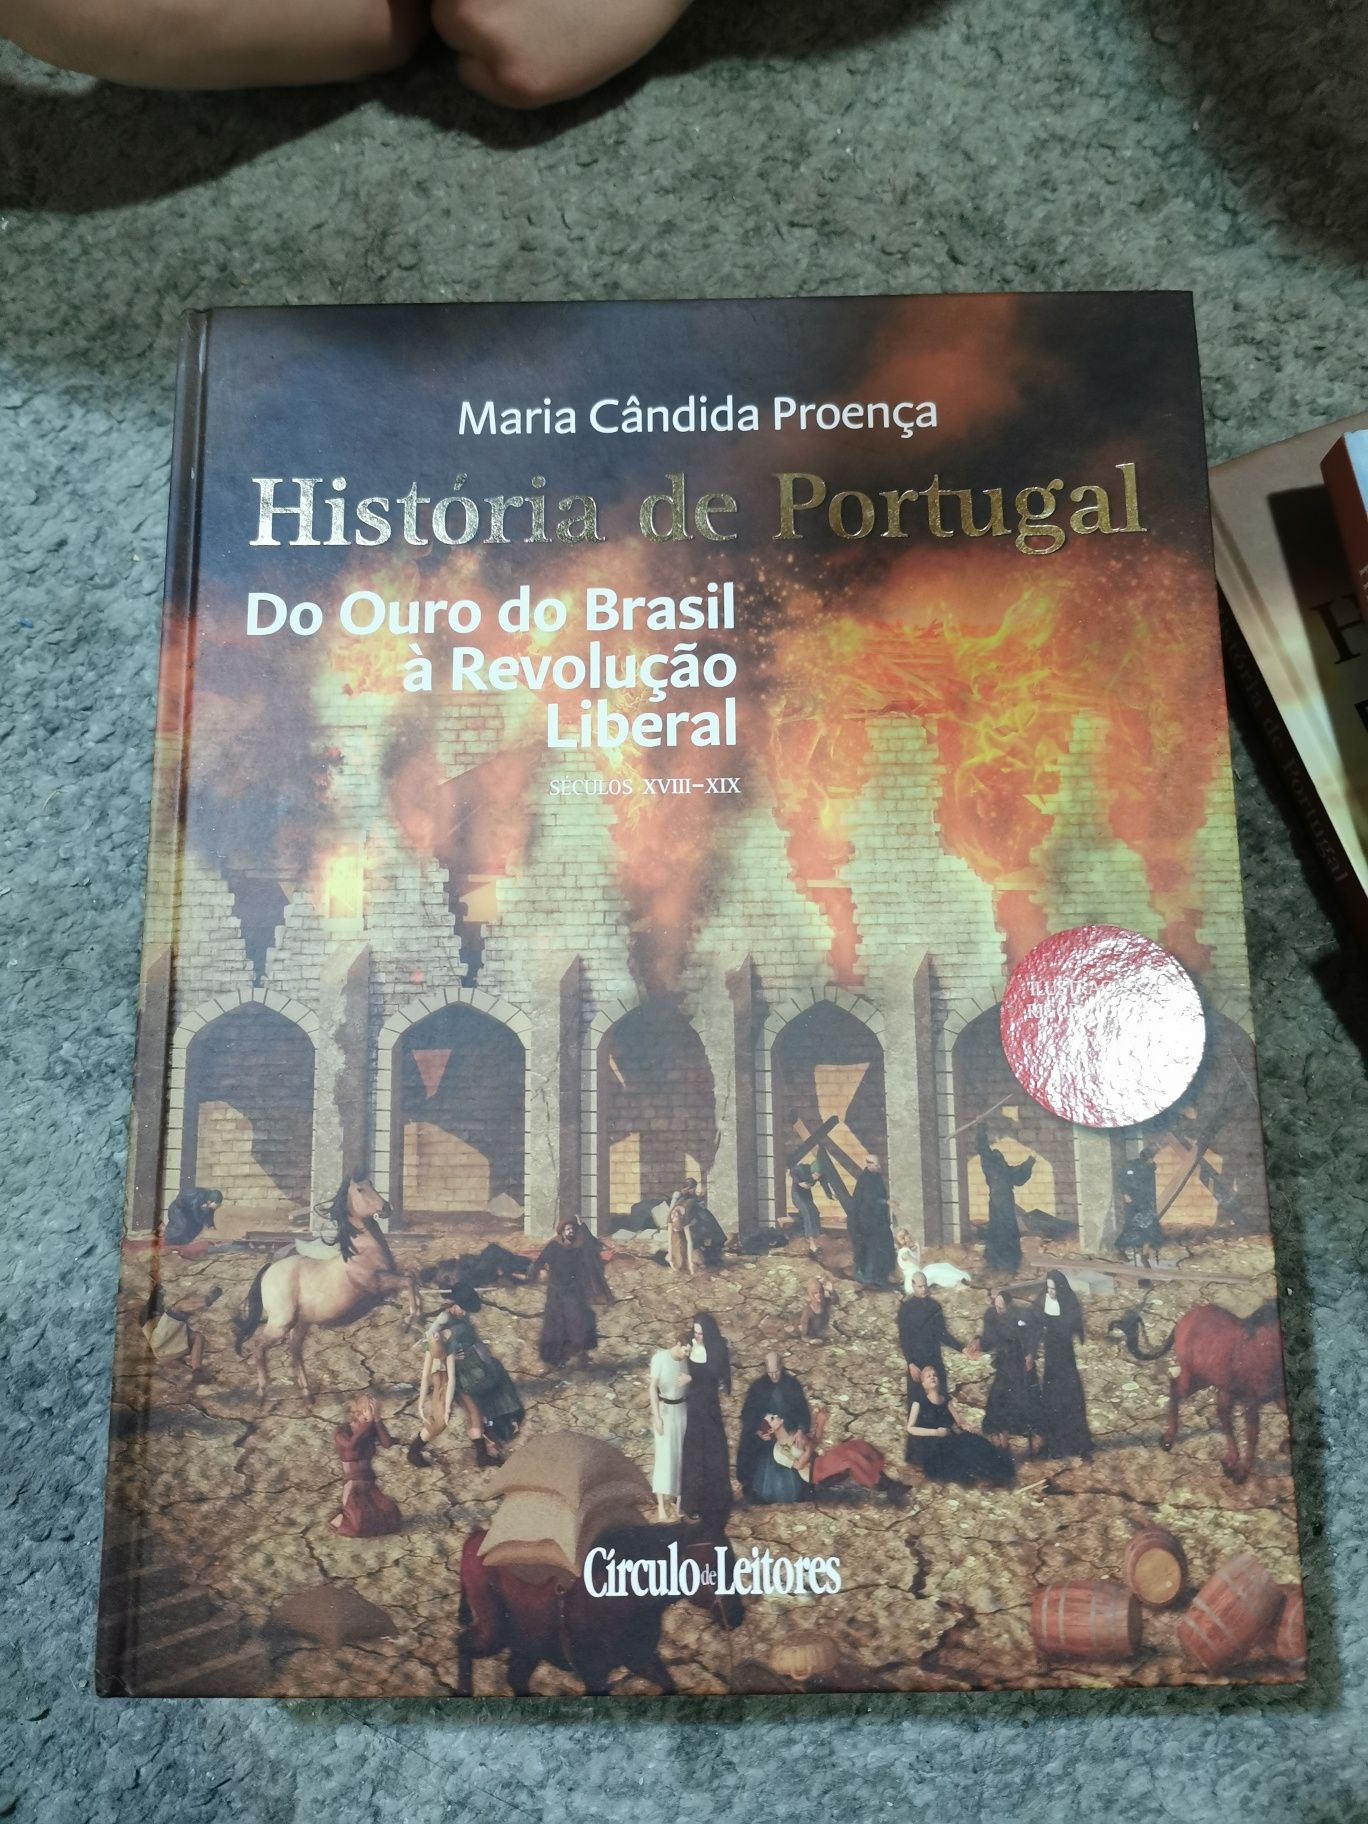 Coleção de Livros sobre história de Portugal